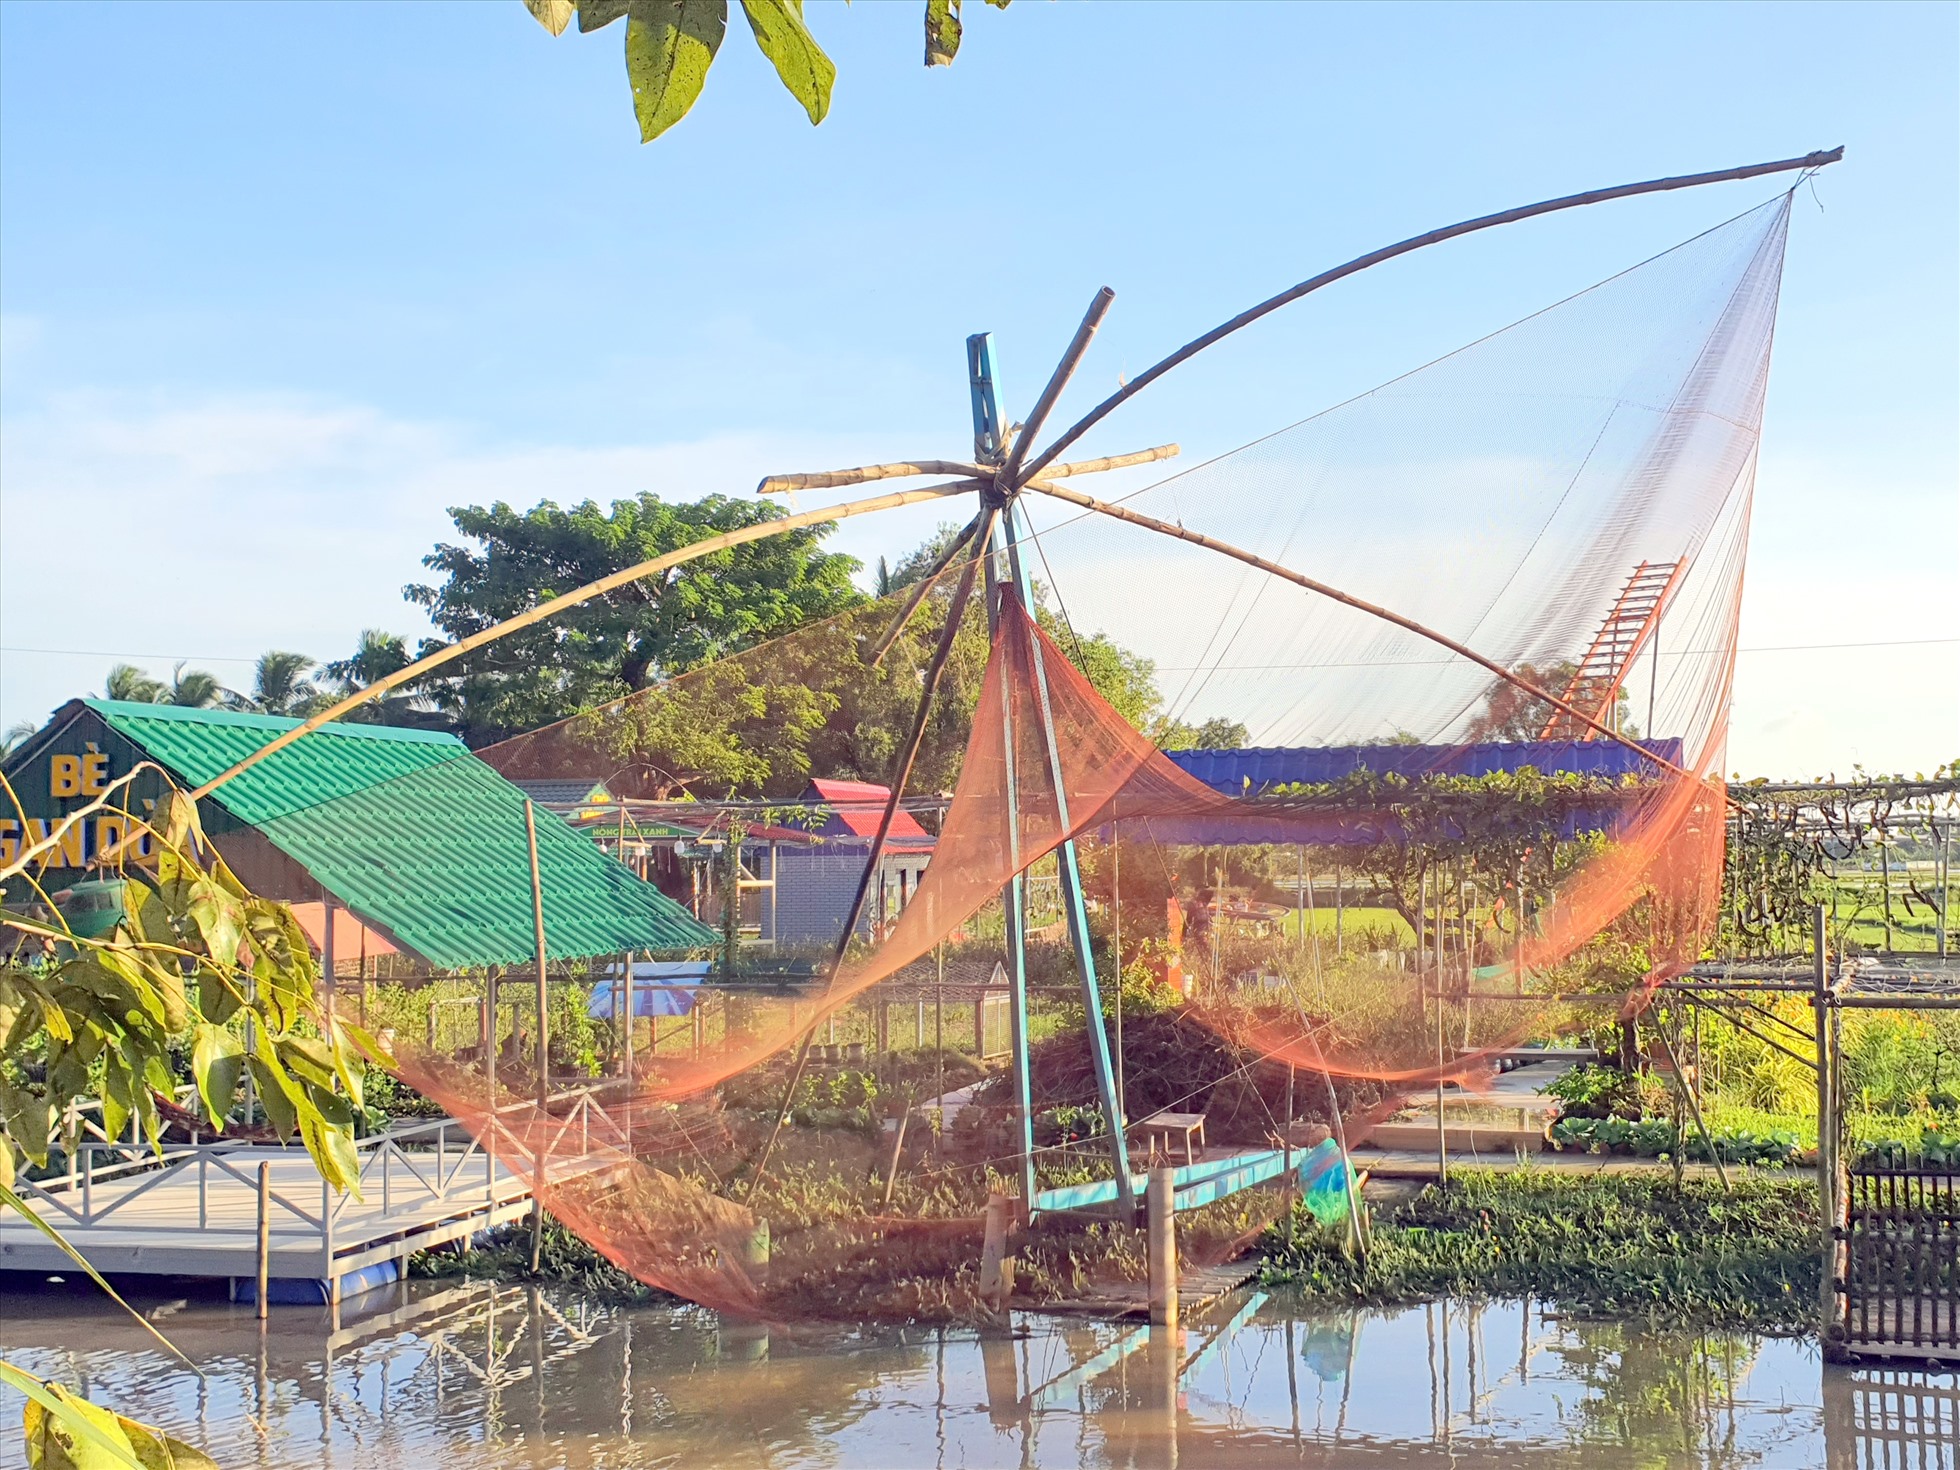 Phong cảnh cất vó bắt cá tại Khu vườn Cậu 3, xã Châu Thới, huyện Vĩnh Lợi, tỉnh Bạc Liêu.